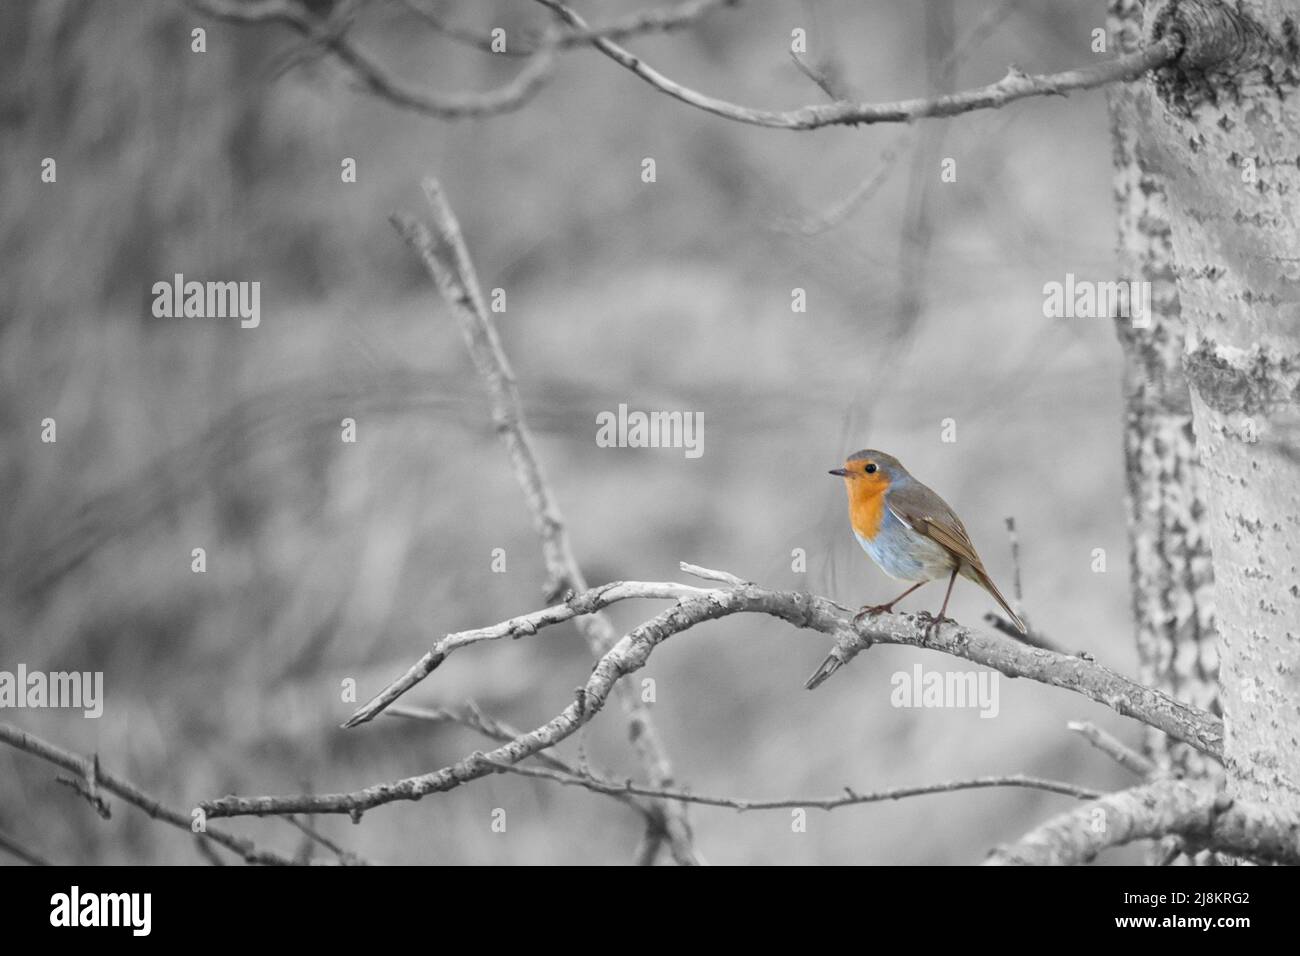 Robin auf einer Zweigstelle im Nationalpark darß. Buntes Gefieder des kleinen singvogels. Tierfoto in der Natur Stockfoto